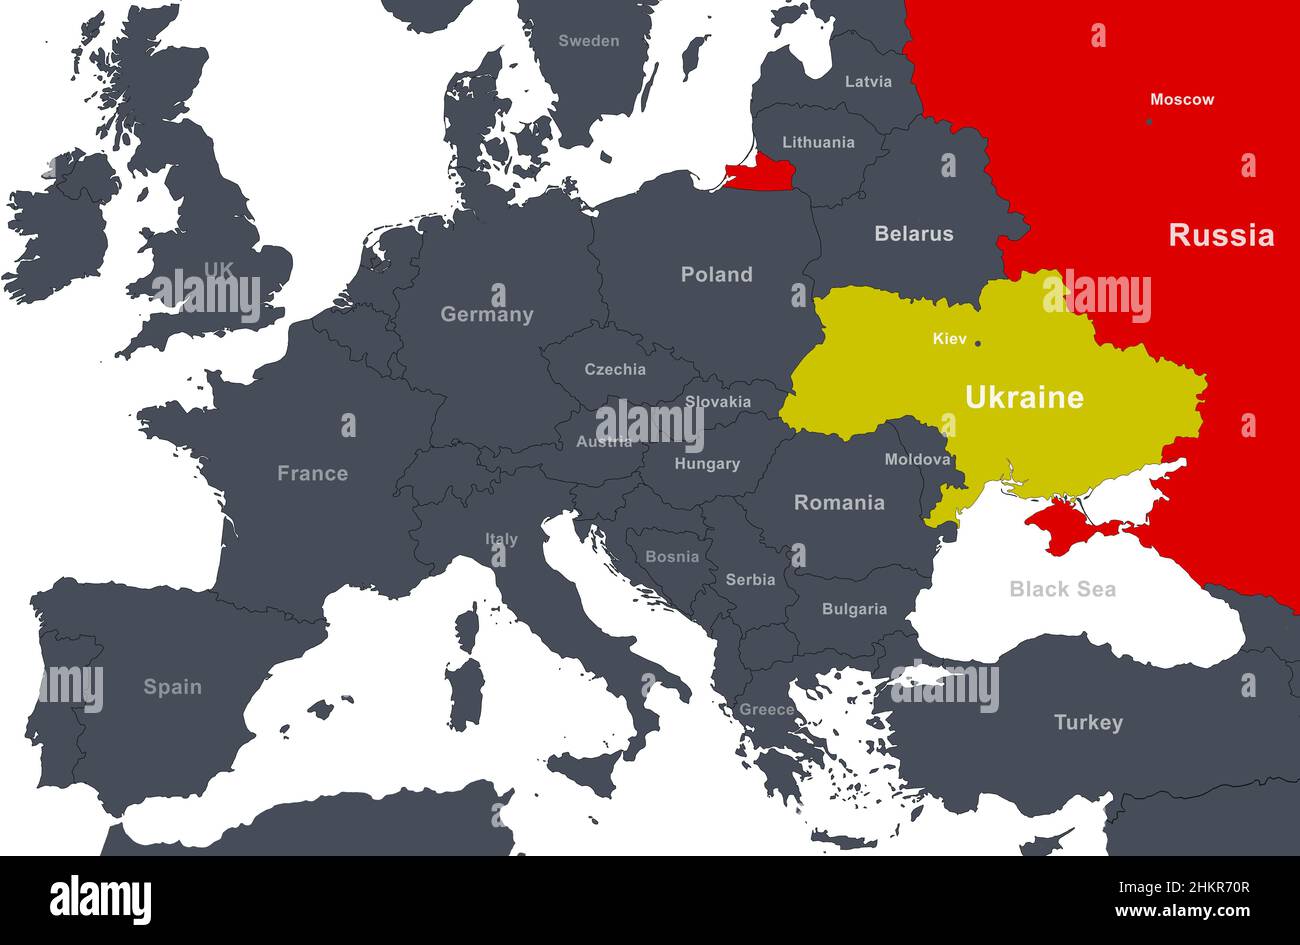 La 3ème GM a-t-elle commencé le 24 février 2022 ? - Page 2 La-russie-et-l-ukraine-sur-la-carte-de-l-europe-territoire-de-l-ukraine-et-frontiere-russe-sur-la-carte-politique-avec-le-belarus-la-pologne-et-d-autres-pays-mer-noire-wi-2hkr70r